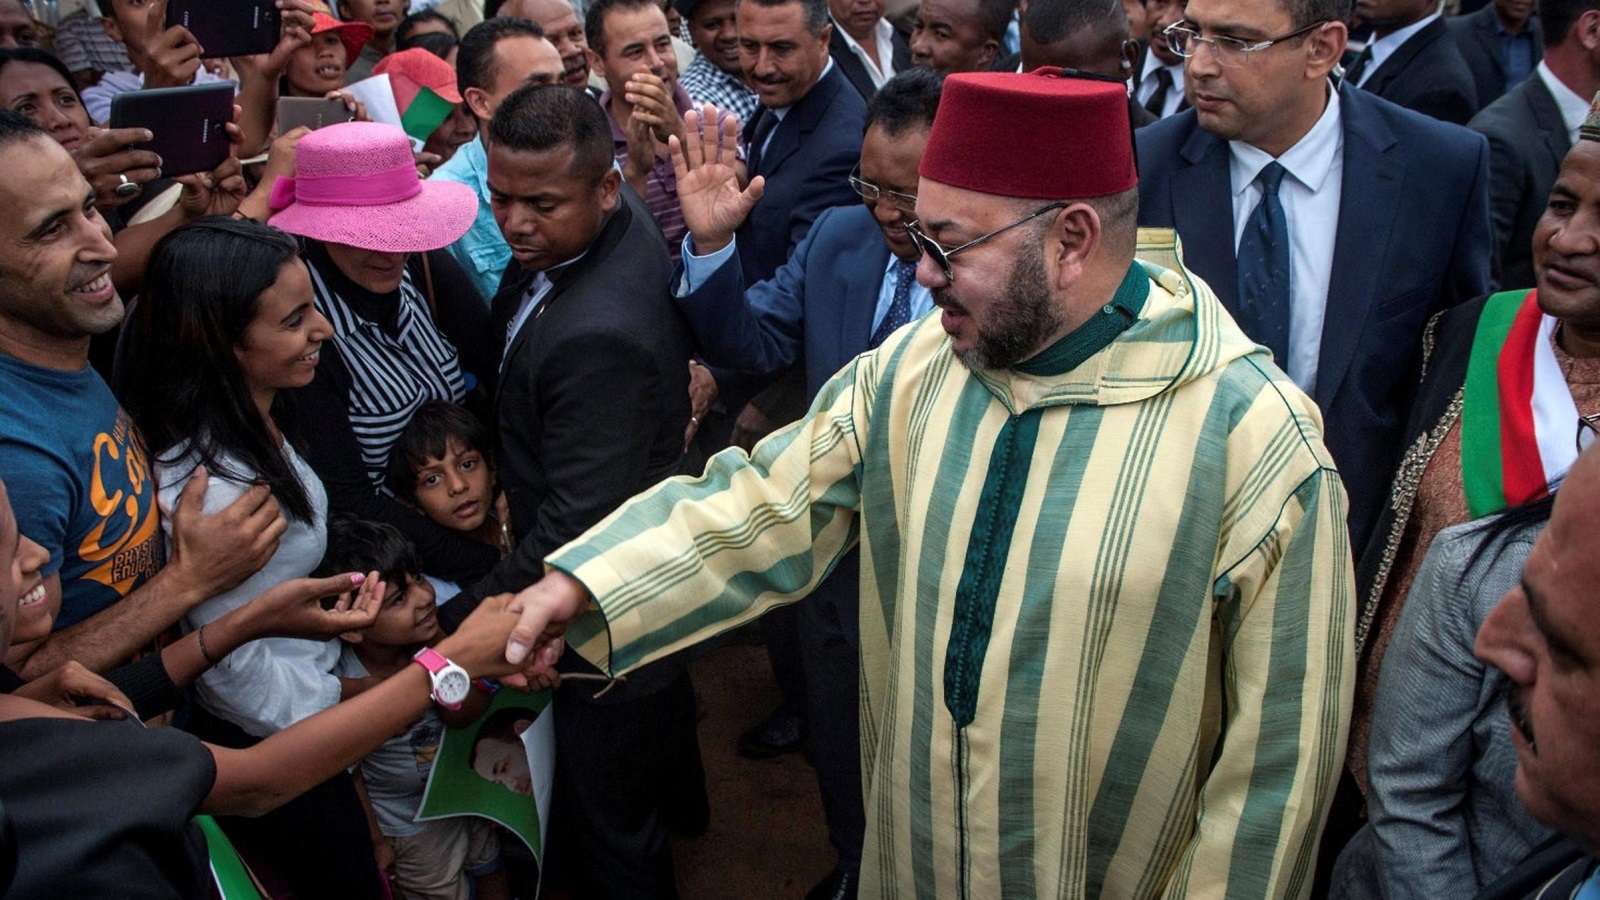 ‪ملك المغرب تدخل قبل ثلاث سنوات وأمر بمعاملة المهاجرين غير النظاميين معاملة إنسانية وقانونية‬ (رويترز)